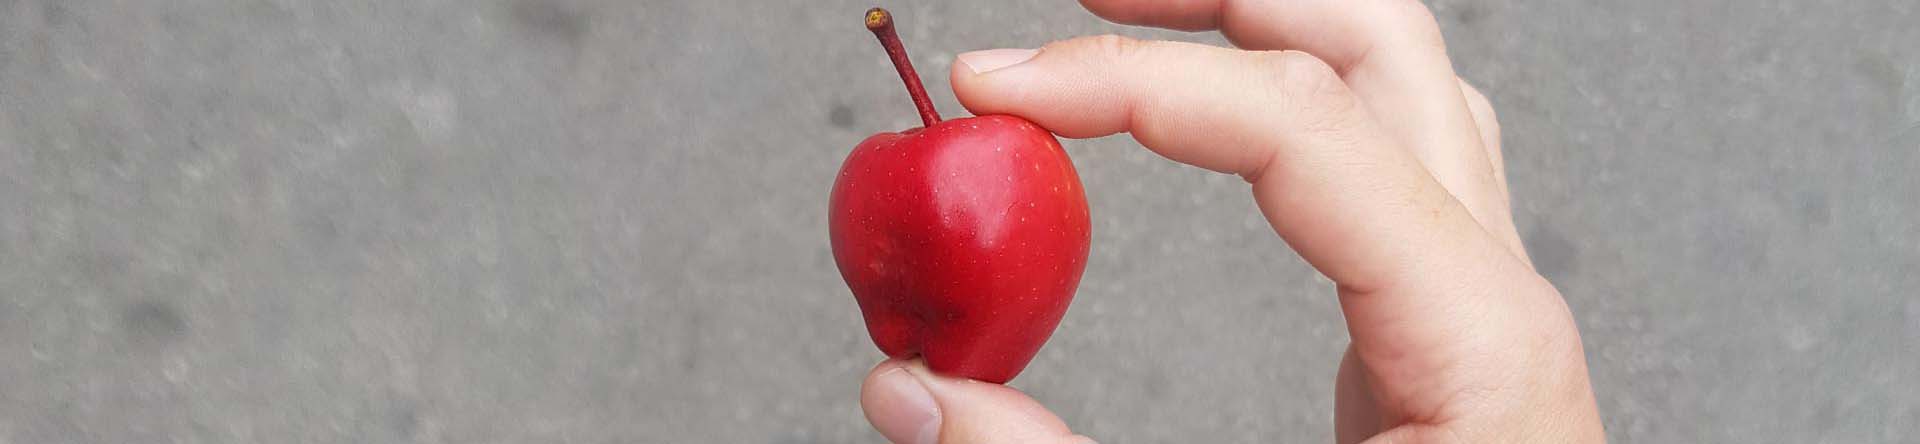 Gründe für Lebensmittelverschwendung: ein zu kleiner Apfel.